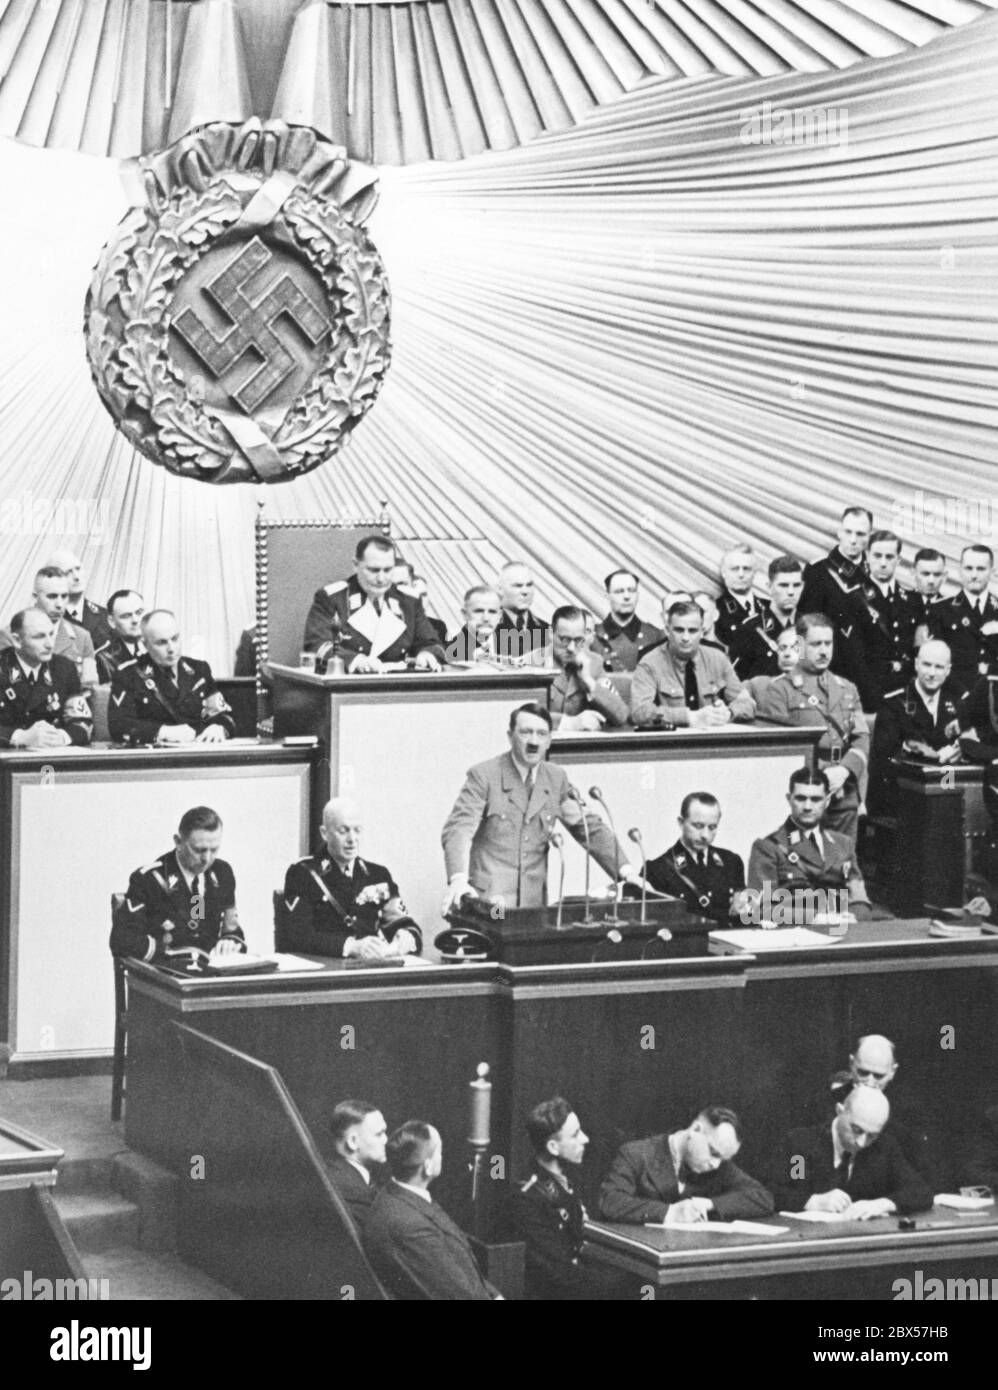 Adolf Hitler lors de son discours lors d'une session du Reichstag dans l'Opéra de Berlin Kroll. Derrière lui, au bureau du Président du Reichstag se trouve Hermann Goering. Banque D'Images